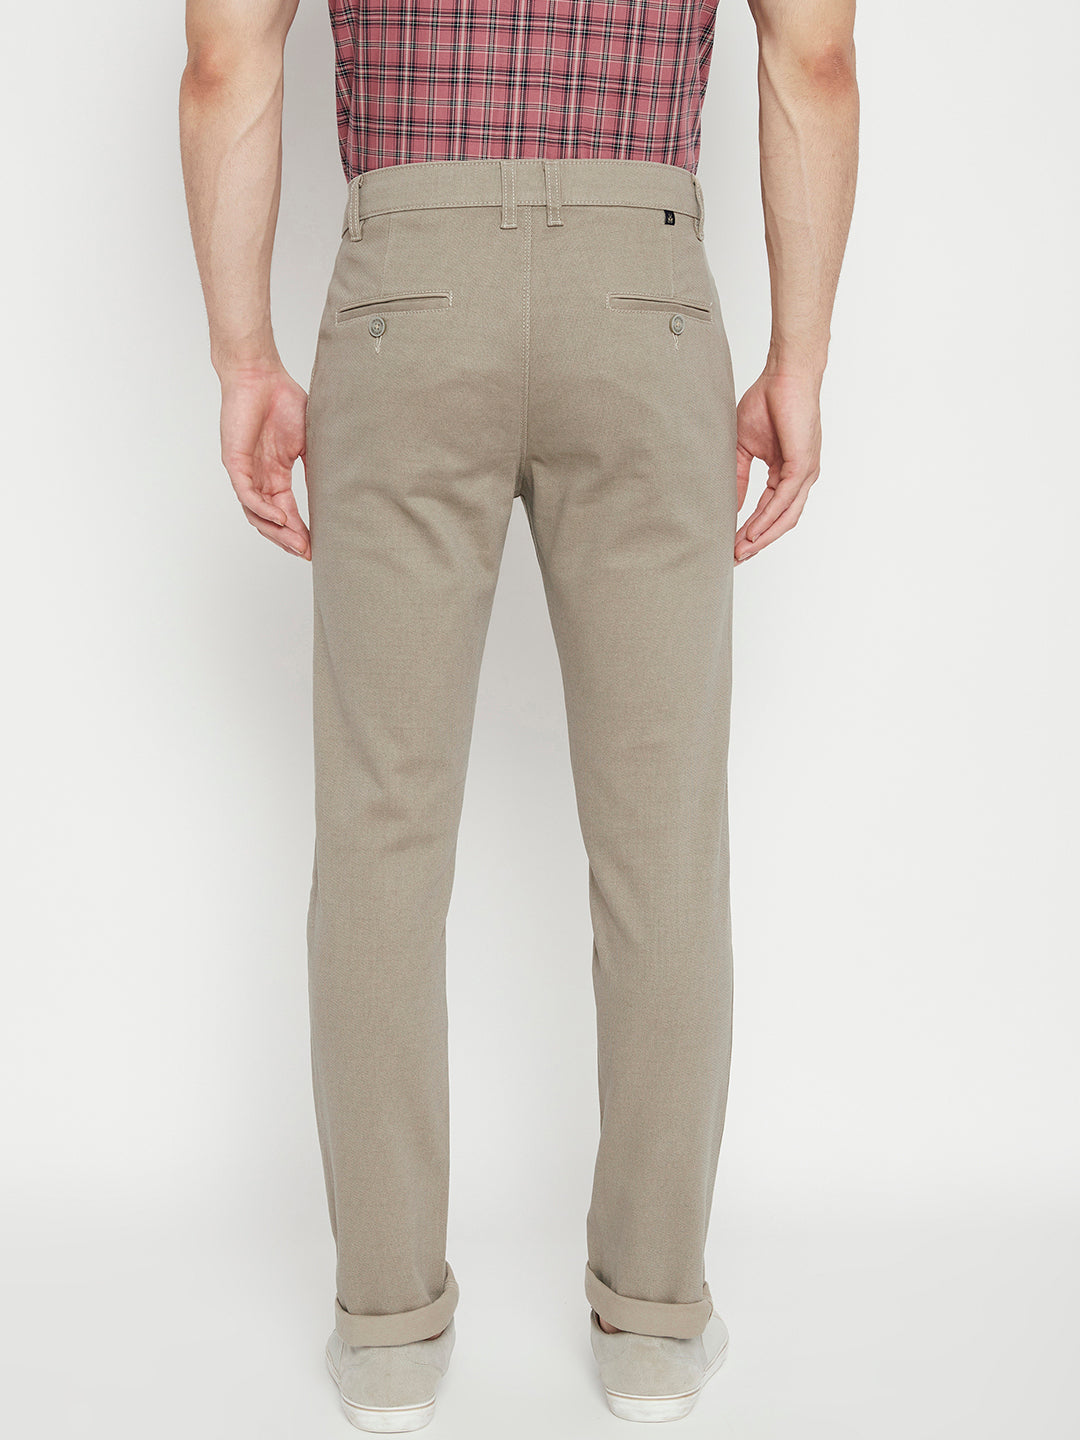 Tan Printed Slim Fit Trousers - Men Trousers